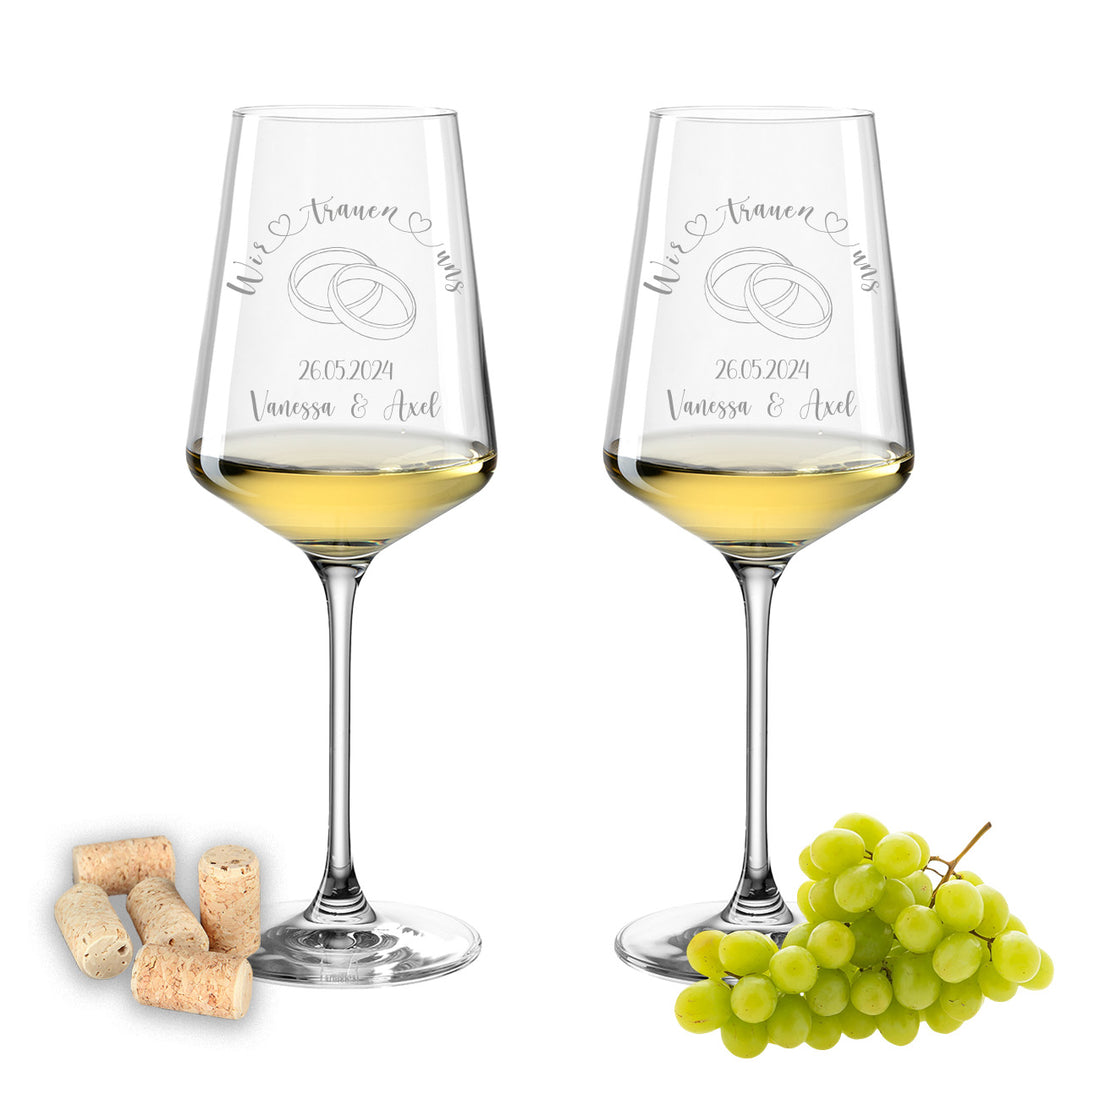 Weinglas mit Gravur Leonardo Puccini "WIR TRAUEN UNS" Motiv Ringe 2 Gläser mit Wunschname & Datum